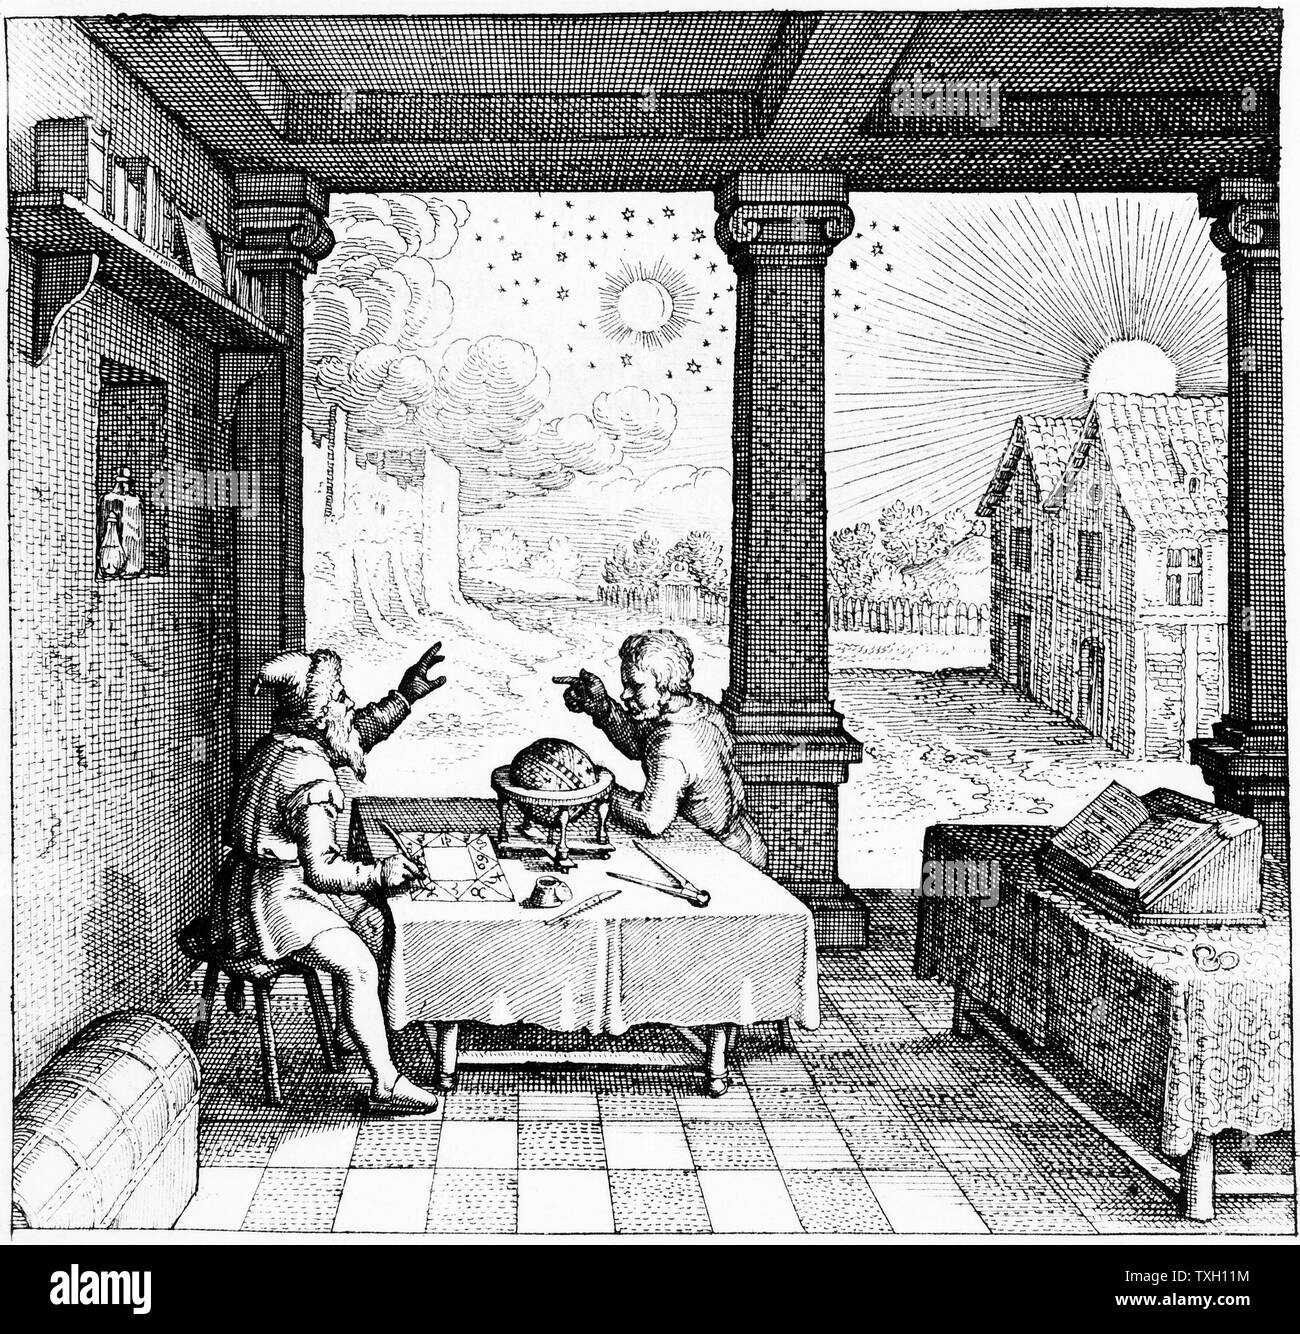 Les astrologues l'élaboration d'un horoscope. À partir de la page de titre de la section sur les horoscopes casting de Robert Fludd 'Utriusque cosmi … historia", Oppenheim, 1617-19. Gravure Banque D'Images